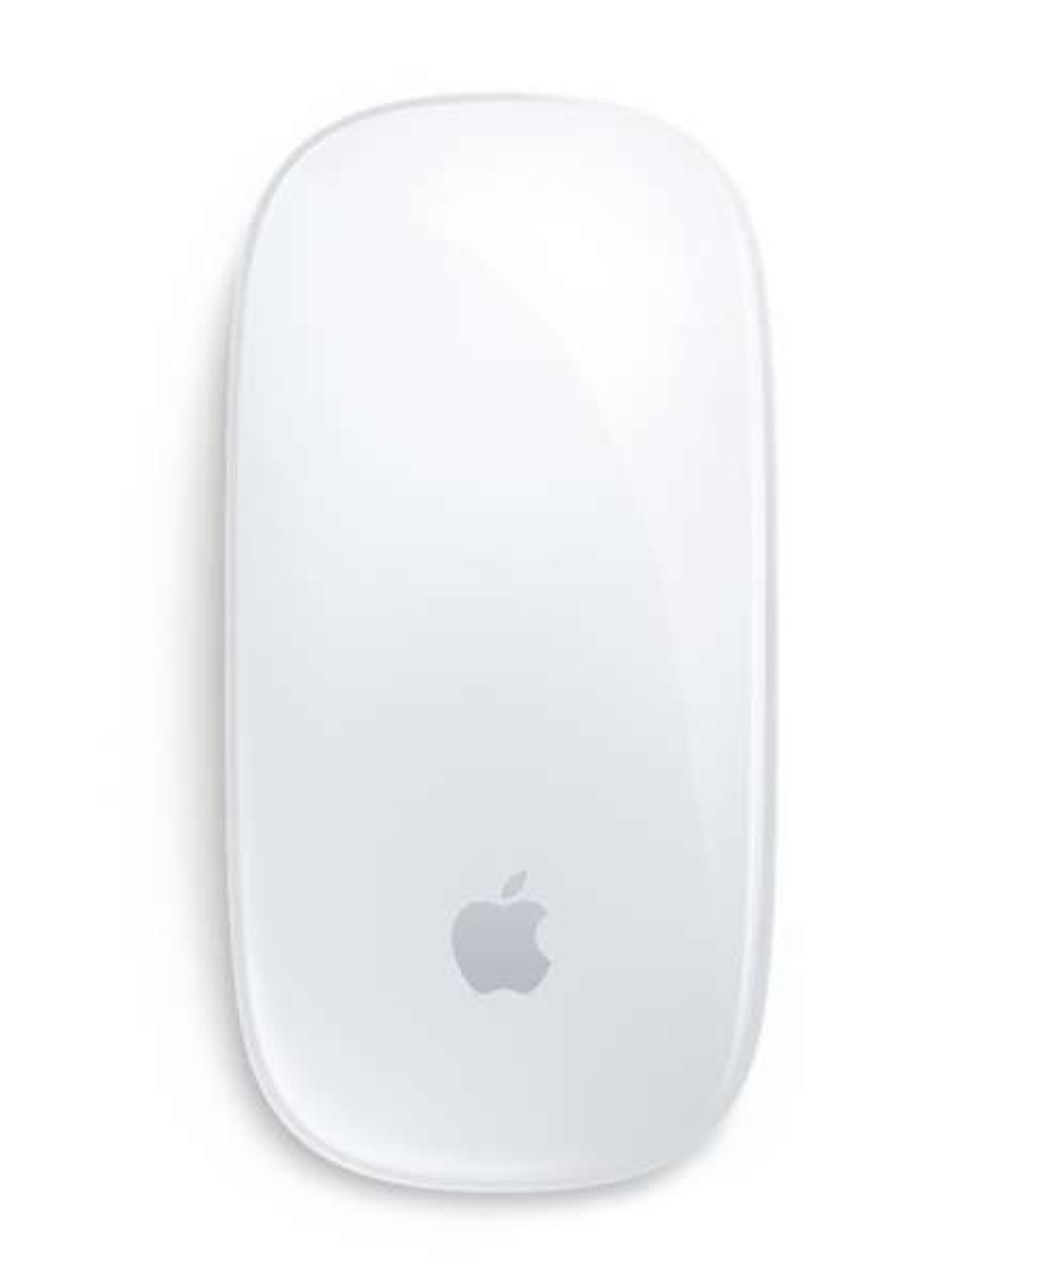 Apple Magic Mouse 2 Silver | MLA02J/A | AYOUB COMPUTERS | LEBANON